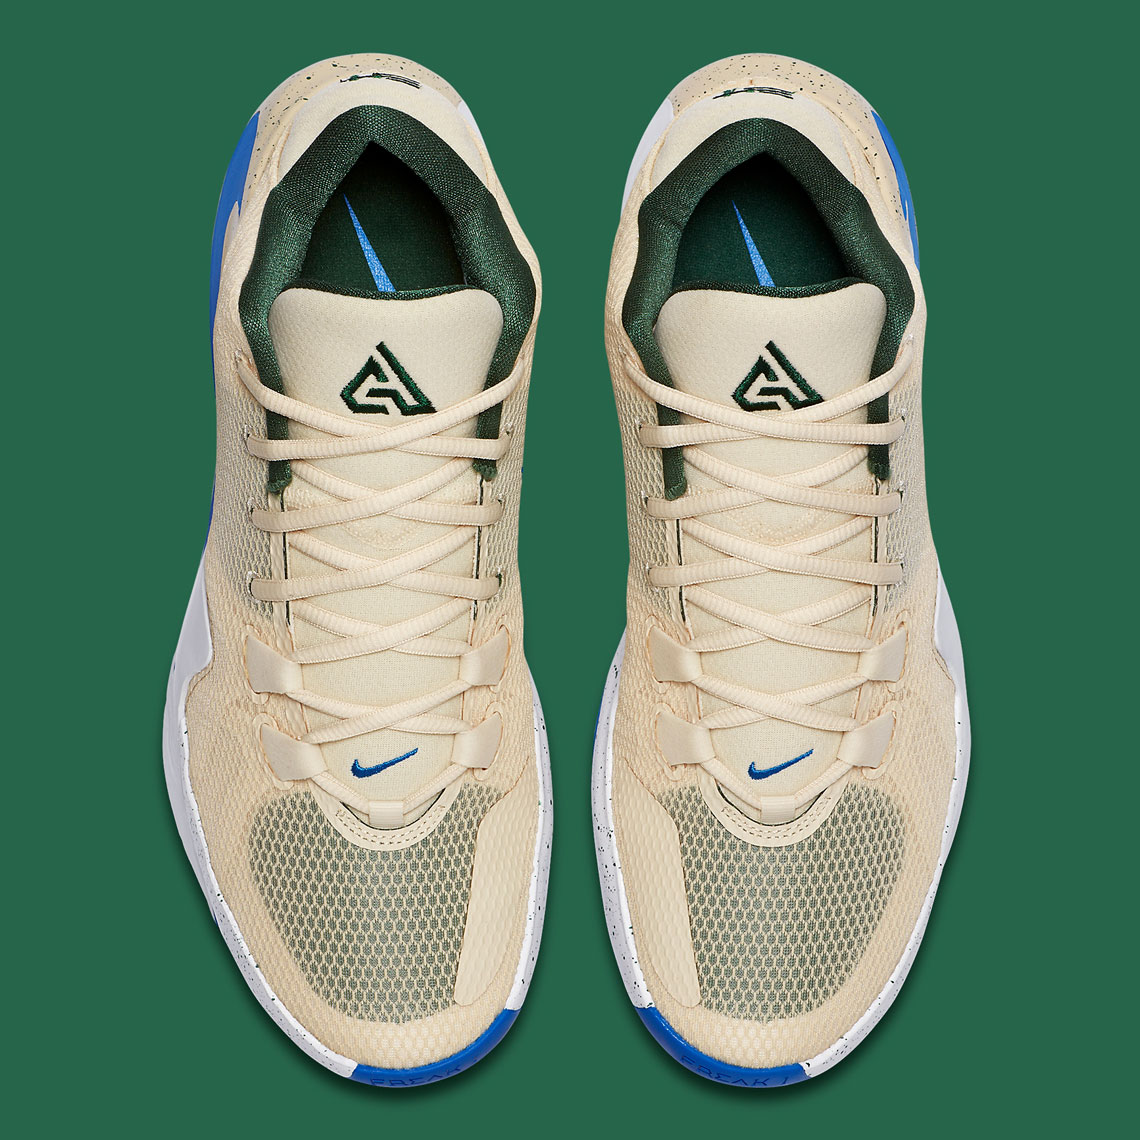 Nike Offcourt-badesandaler til mænd grøn Bq5422 200 6